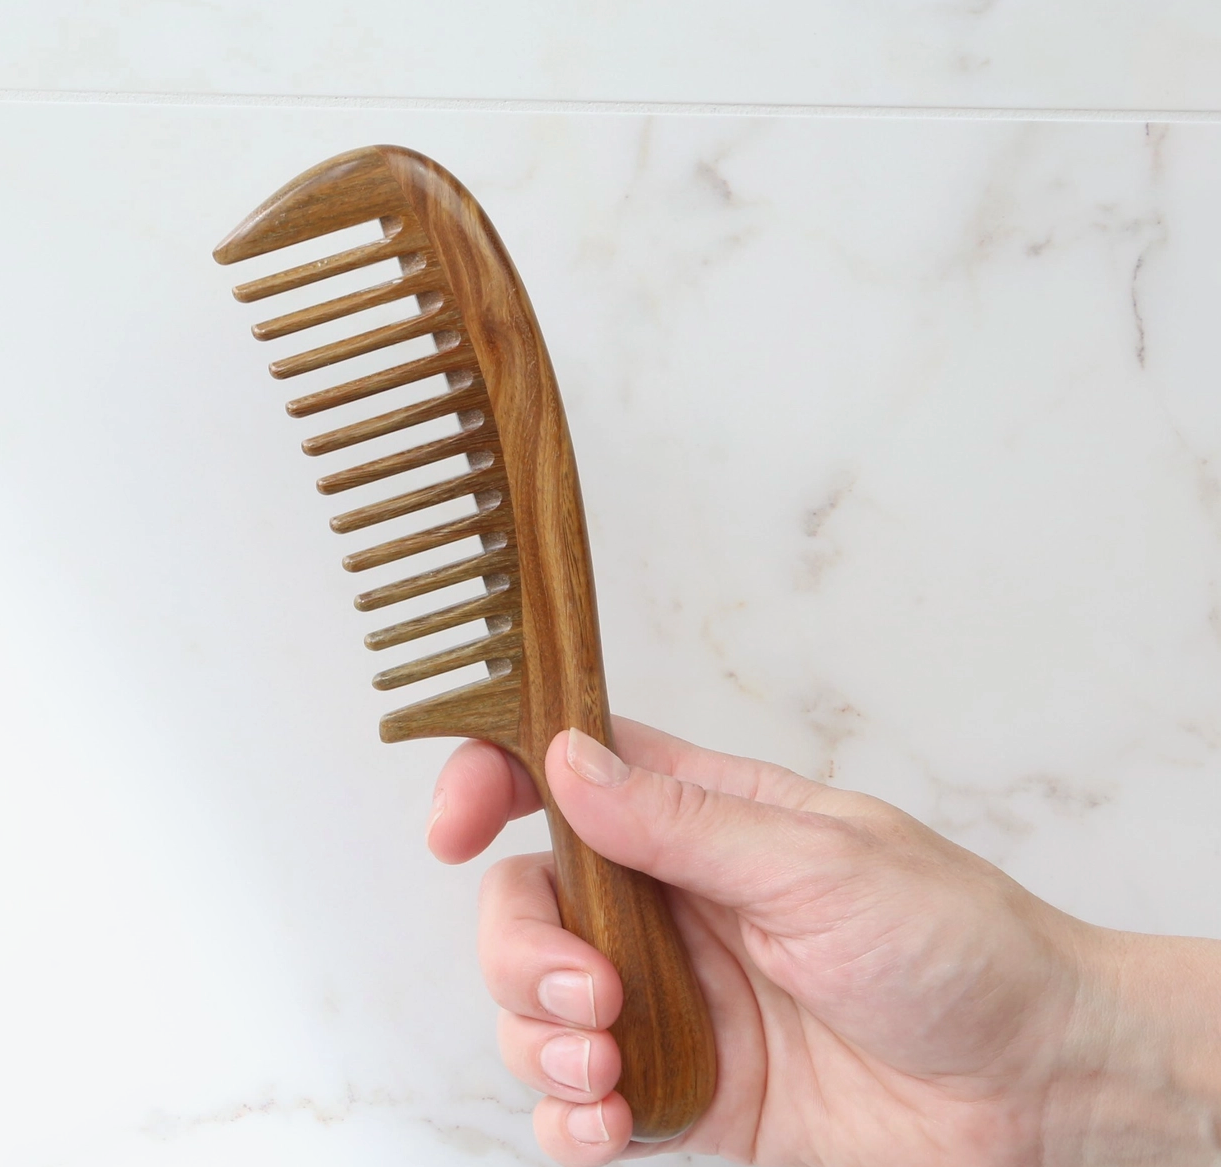 Sandalwood hair brush